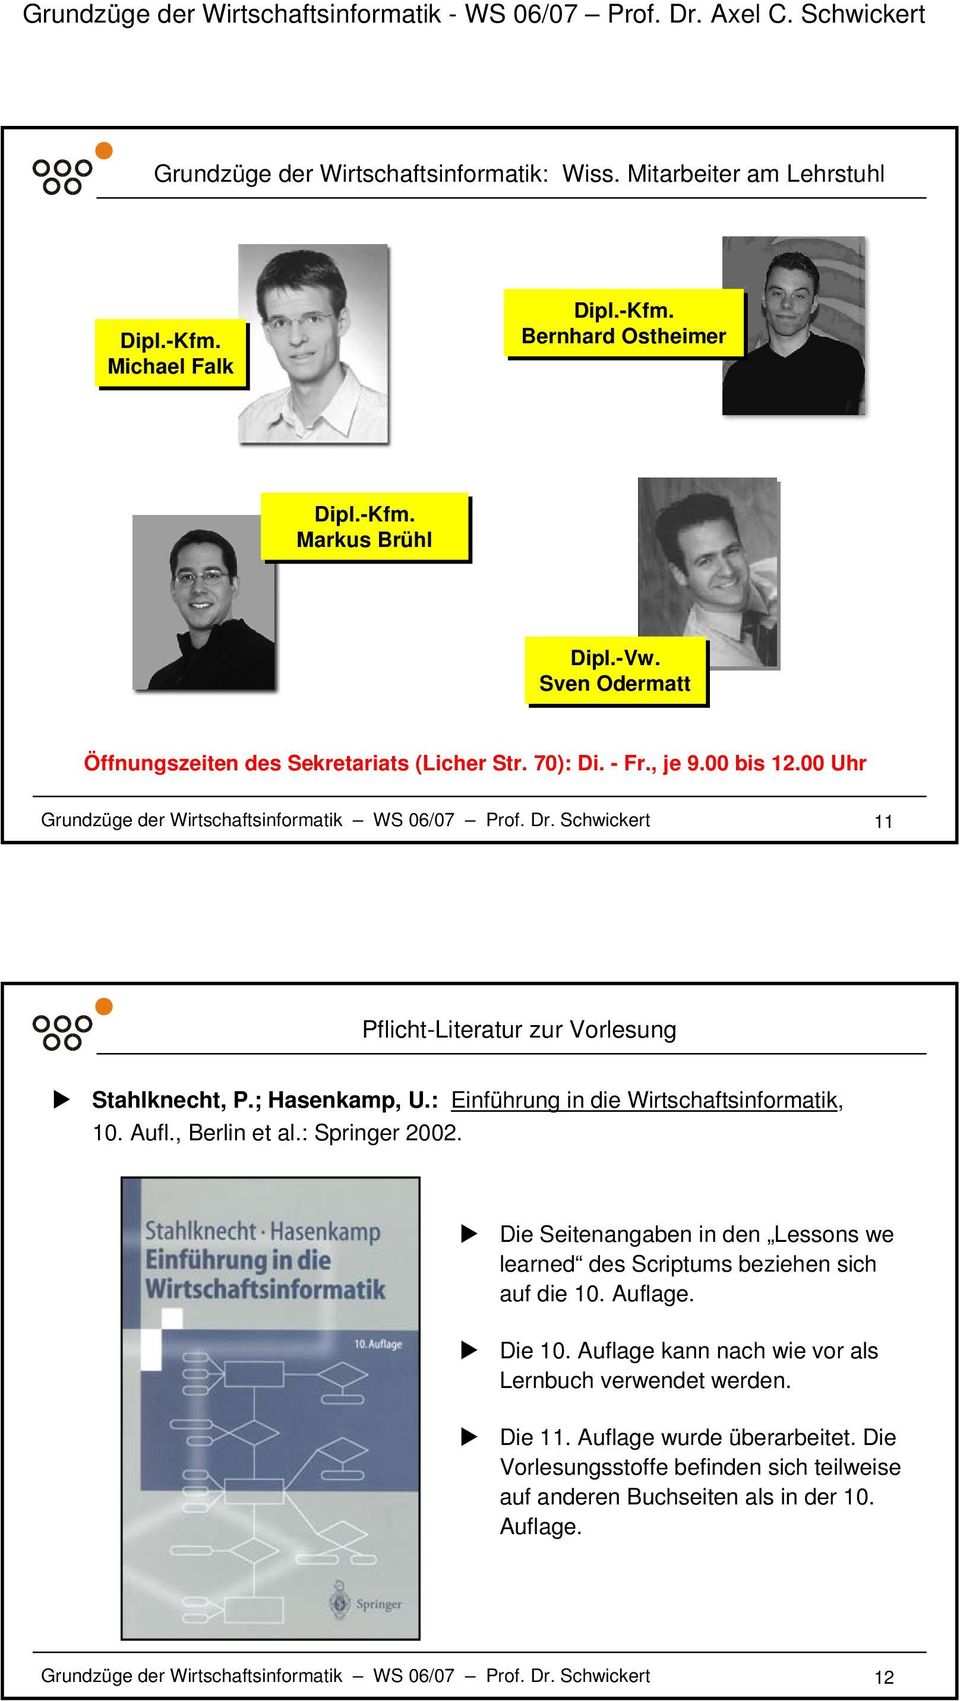 Schwickert 11 Pflicht-Literatur zur Vorlesung Stahlknecht, P.; Hasenkamp, U.: Einführung in die Wirtschaftsinformatik, 10. Aufl., Berlin et al.: Springer 2002.